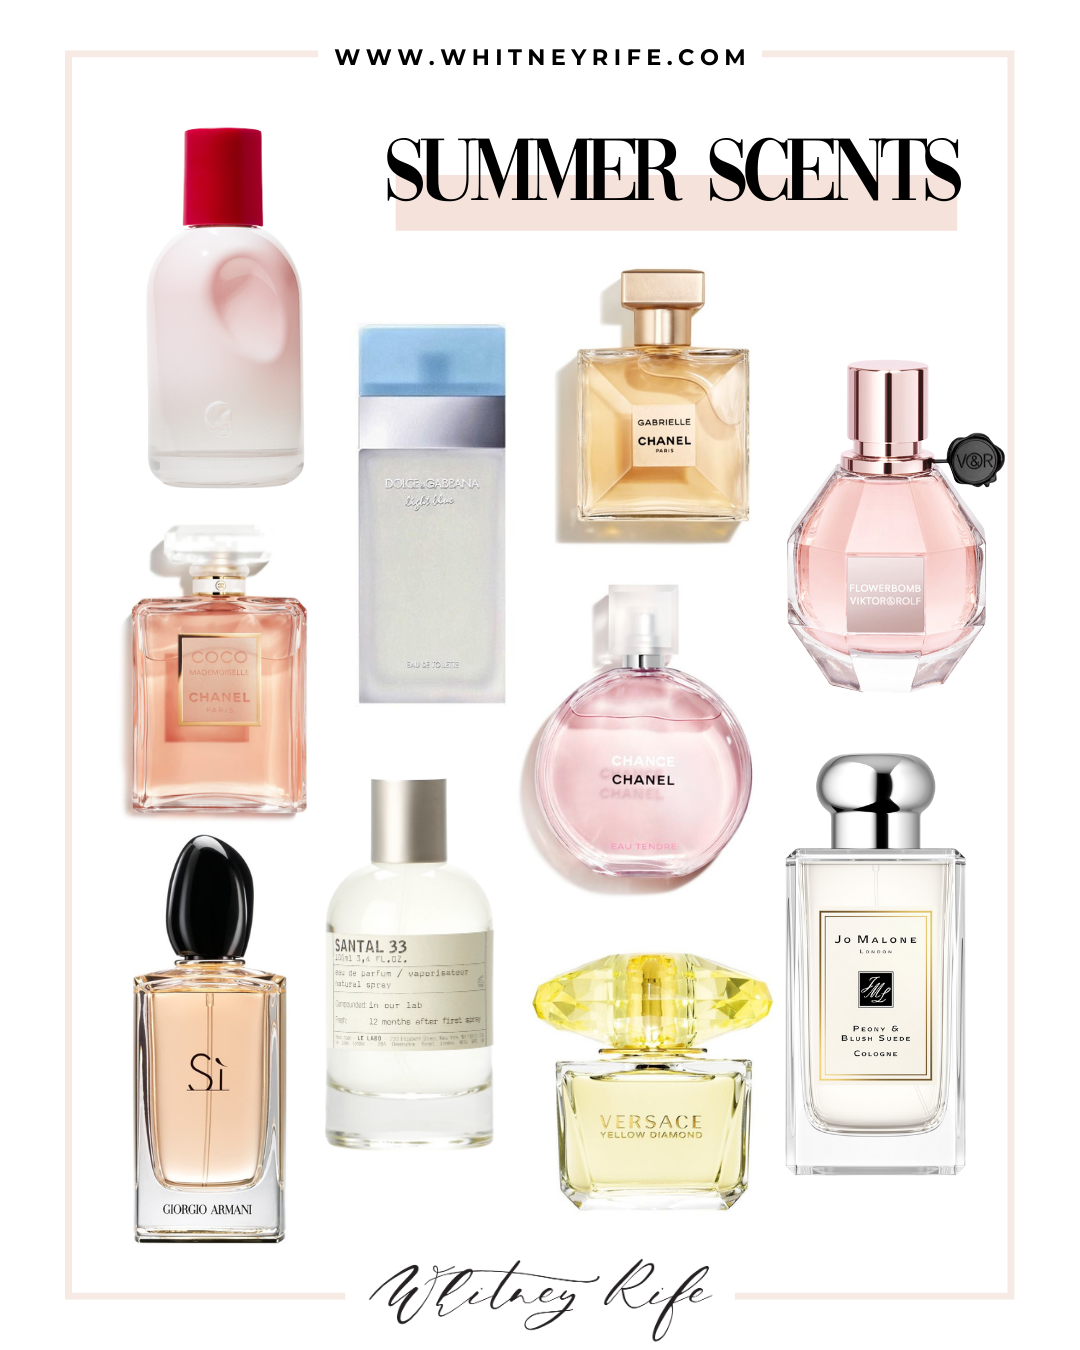 10 Best Clean Perfumes